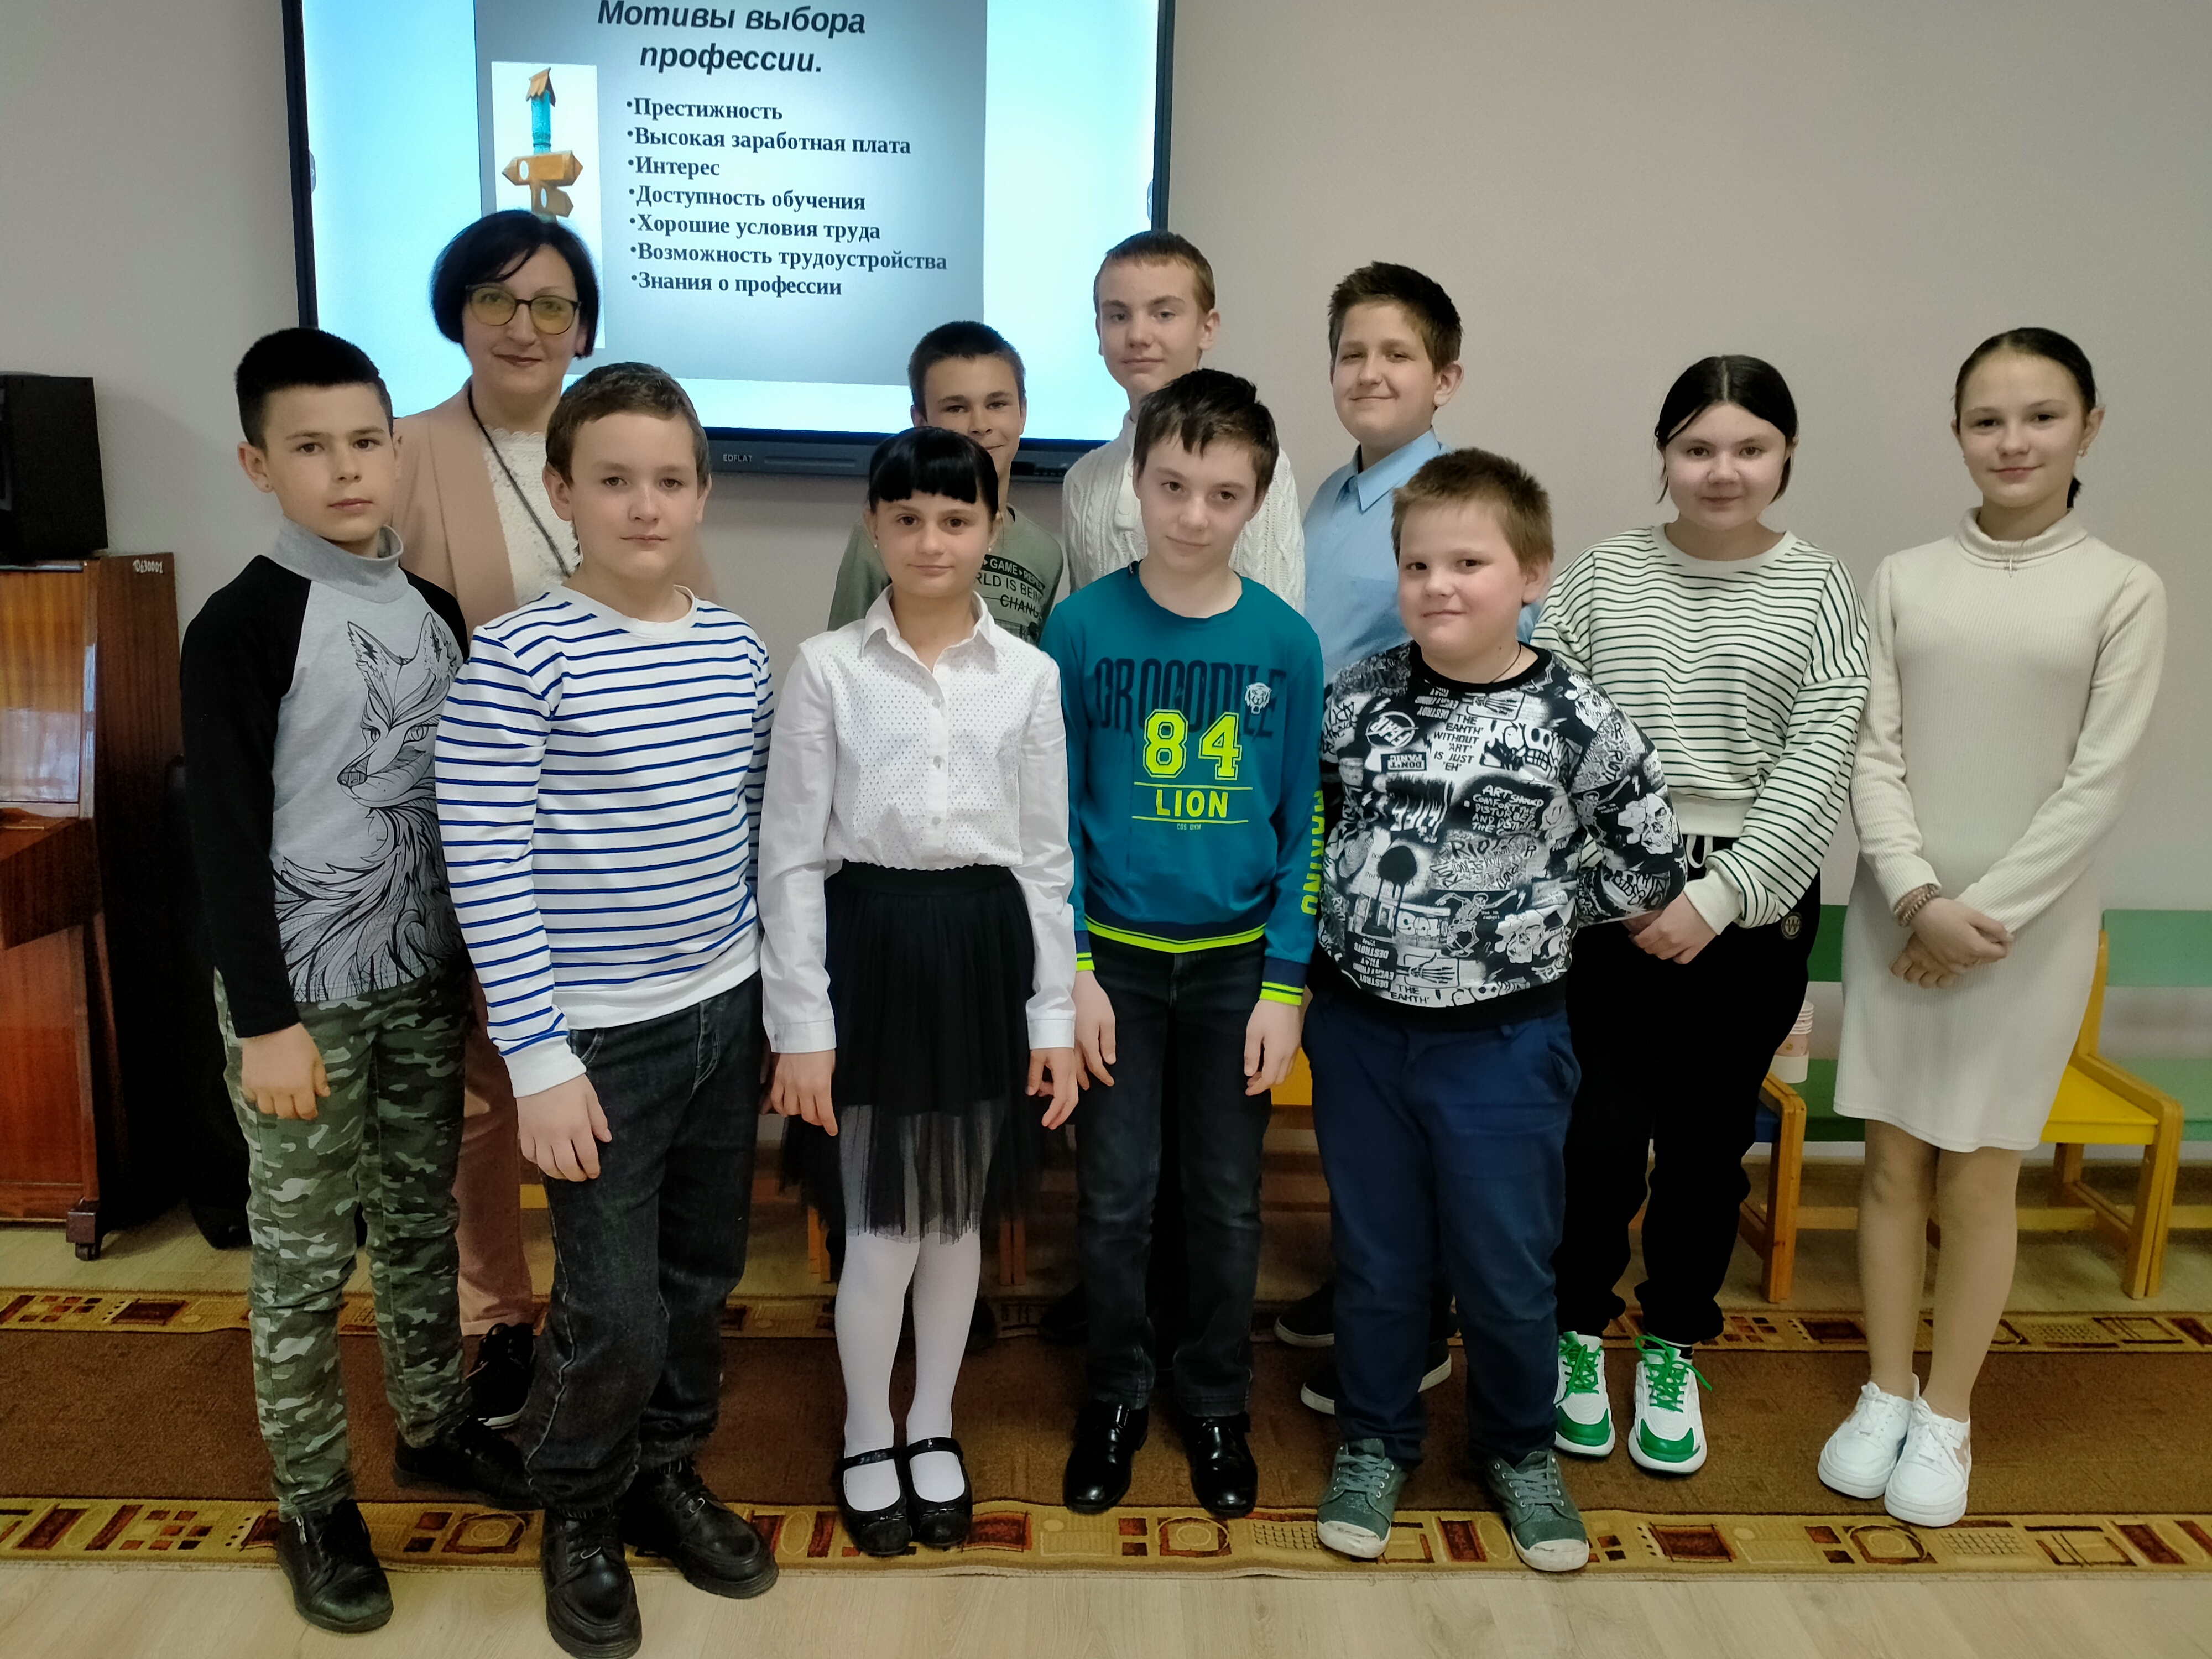 В Детском социальном центре Шахтерска прошло воспитательное мероприятие «Мотивы выбора профессии».